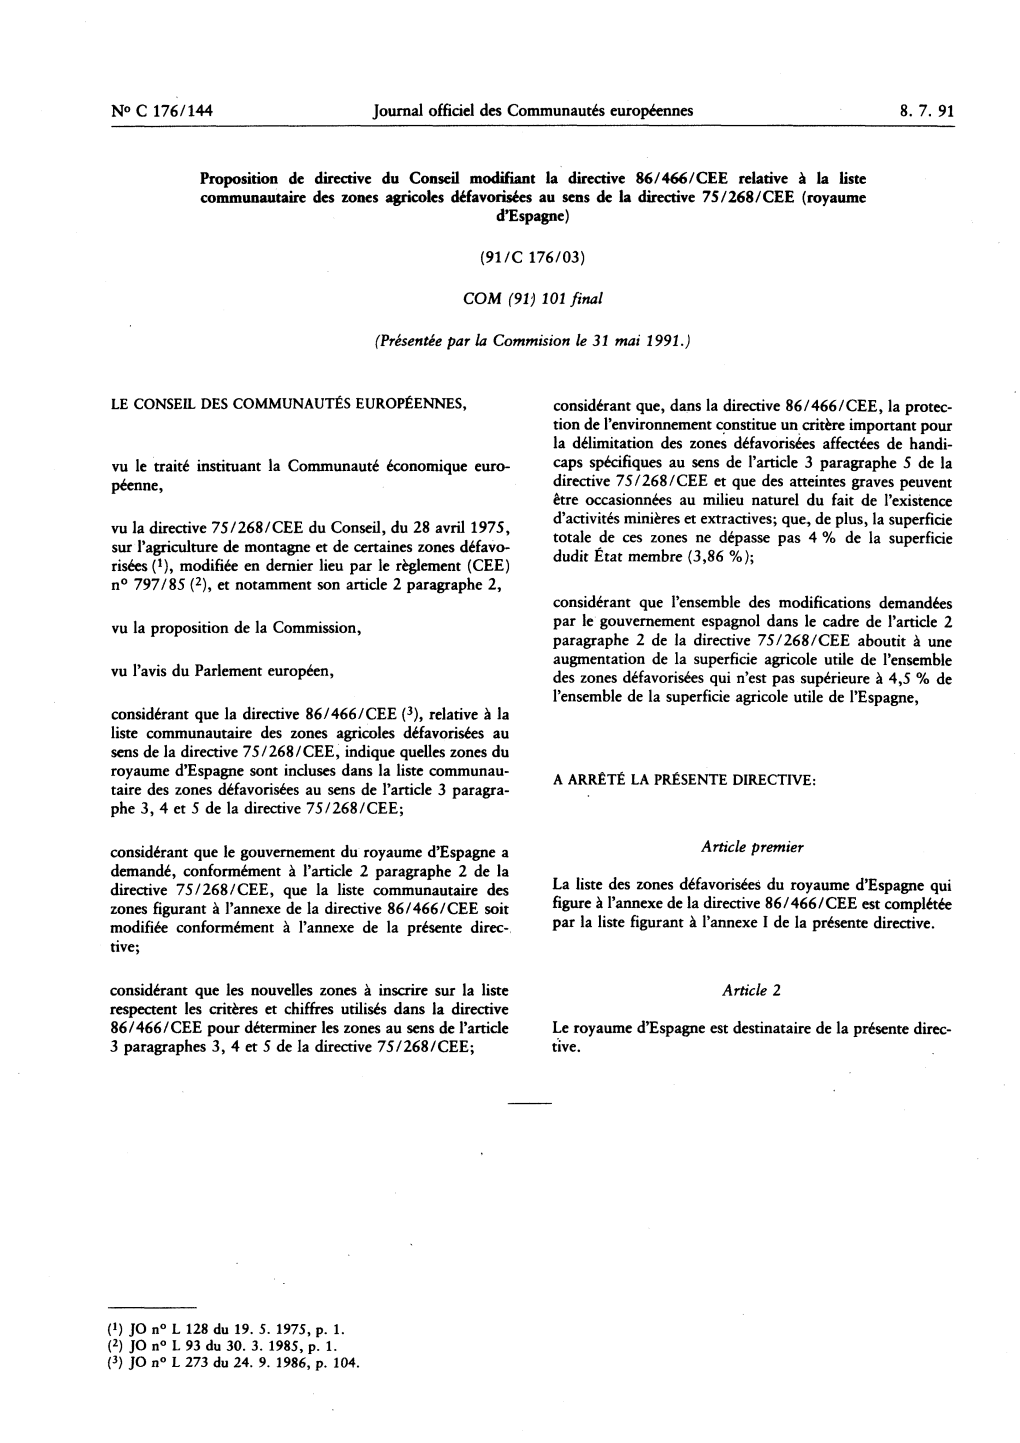 N° C 176/144 Journal Officiel Des Communautés Européennes 8. 7. 91 Proposition De Directive Du Conseil Modifiant La Directive